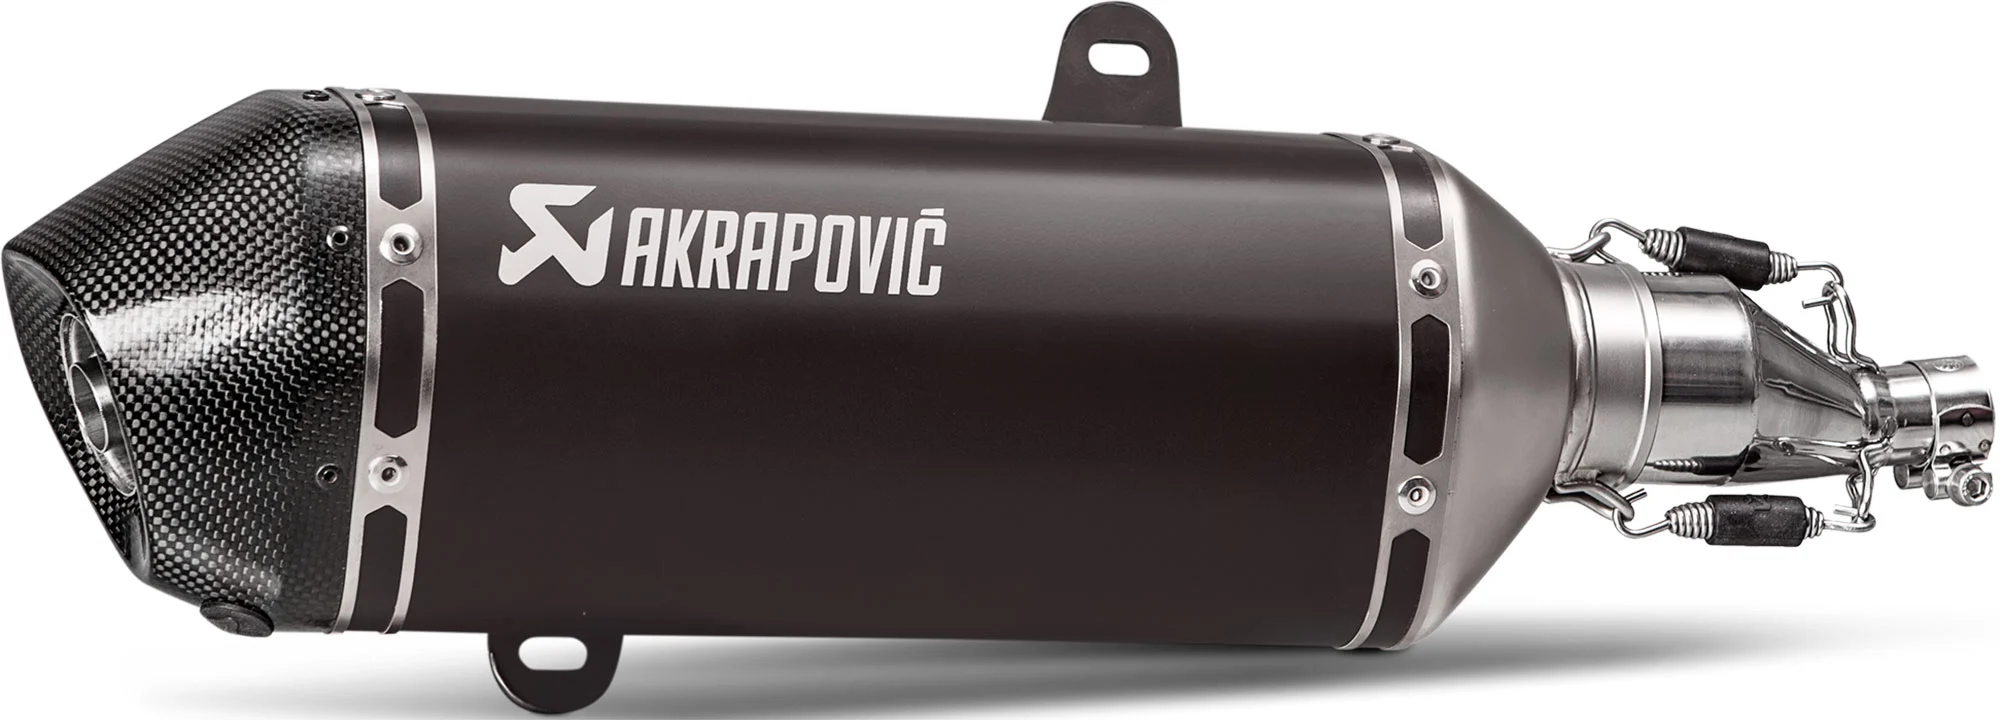 Akrapovic Akrapovic ligne scooter en titane, carbone & inox